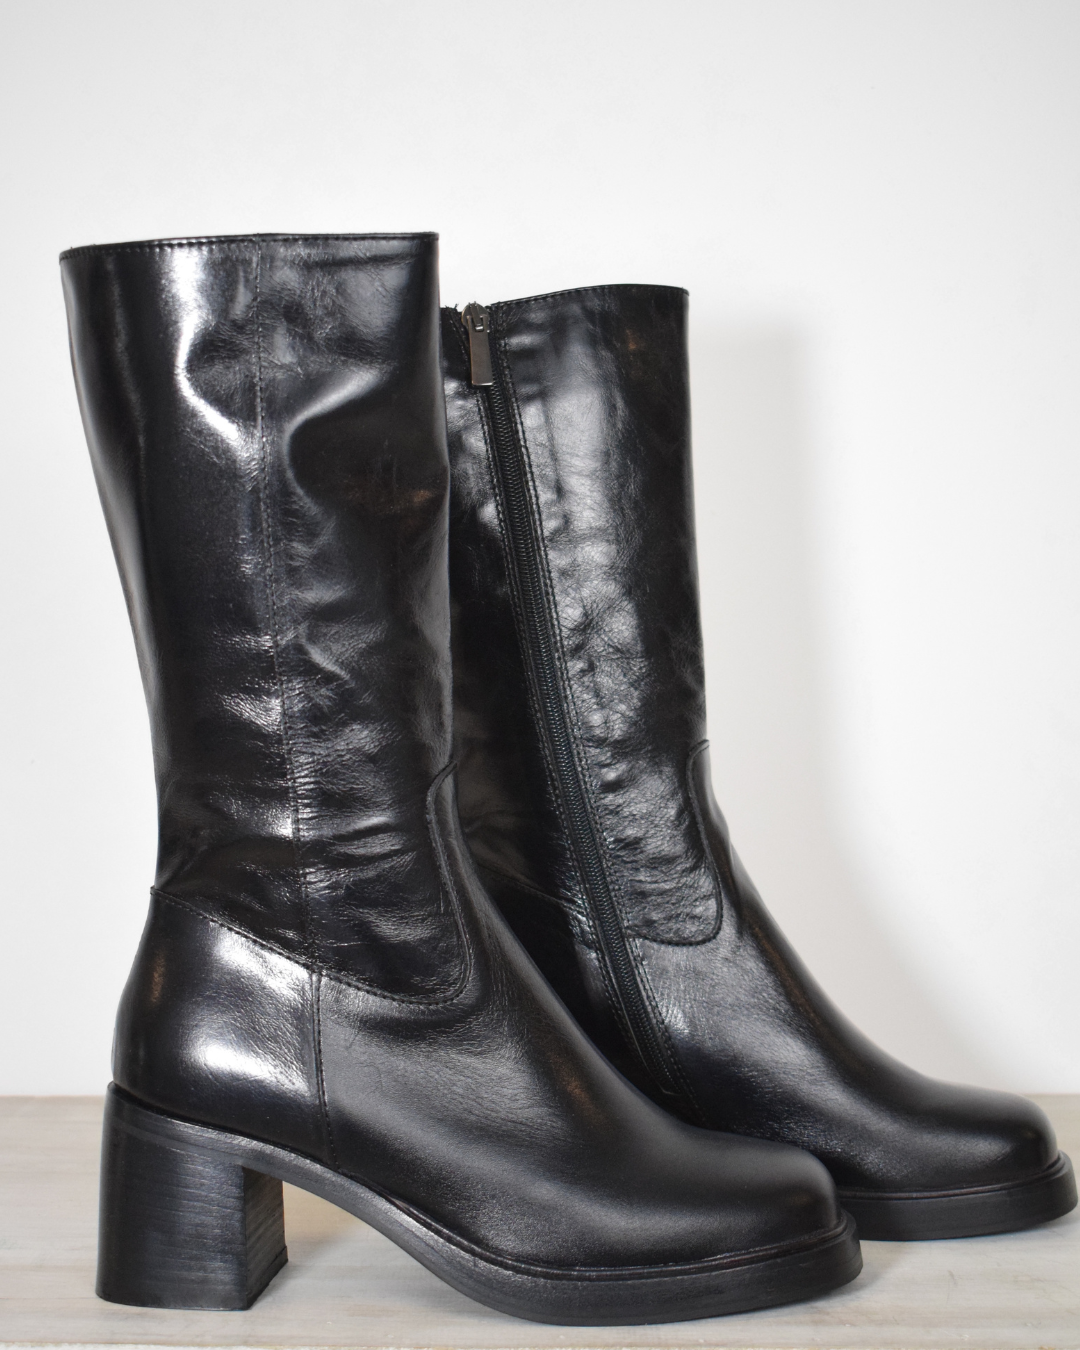  Black high heel boot